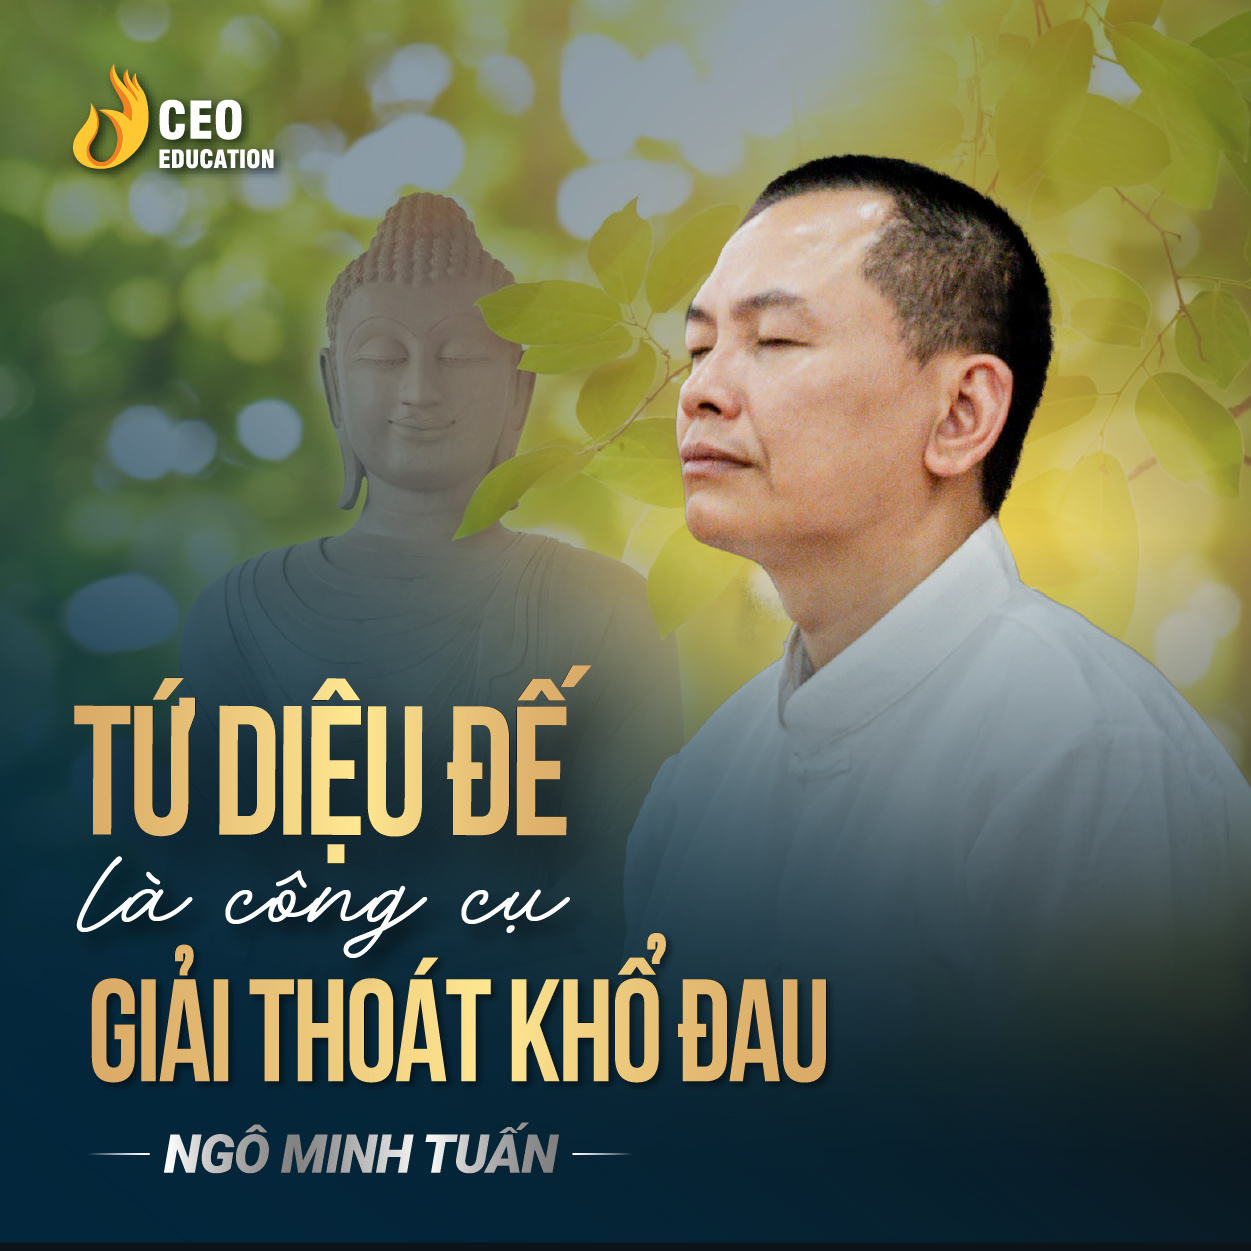 Tứ diệu đế là bài thuốc chữa lành mọi khổ đau trong cuộc sống | Ngô Minh Tuấn | Học Viện CEO Việt Nam